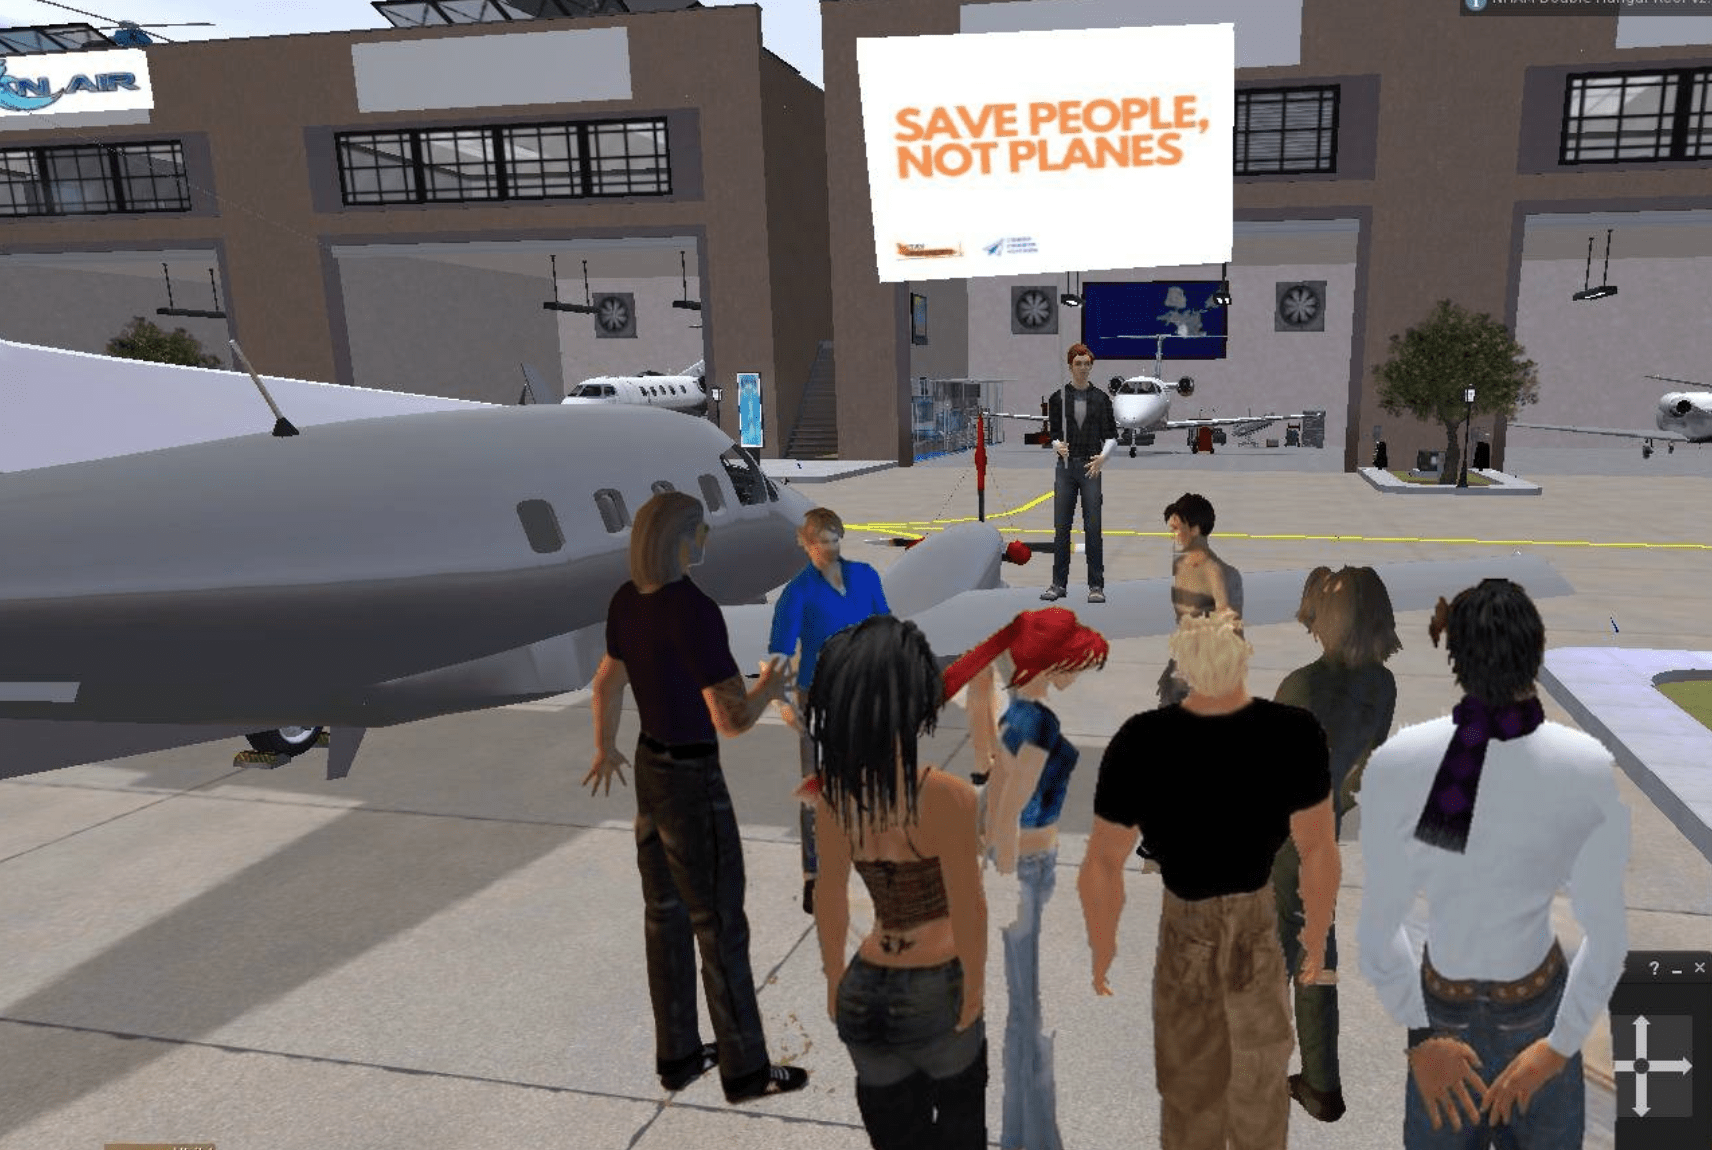 Digitale landingsbaan in Second Life wordt bezet om overheid op te roepen vliegen na coronacrisis te herzien.